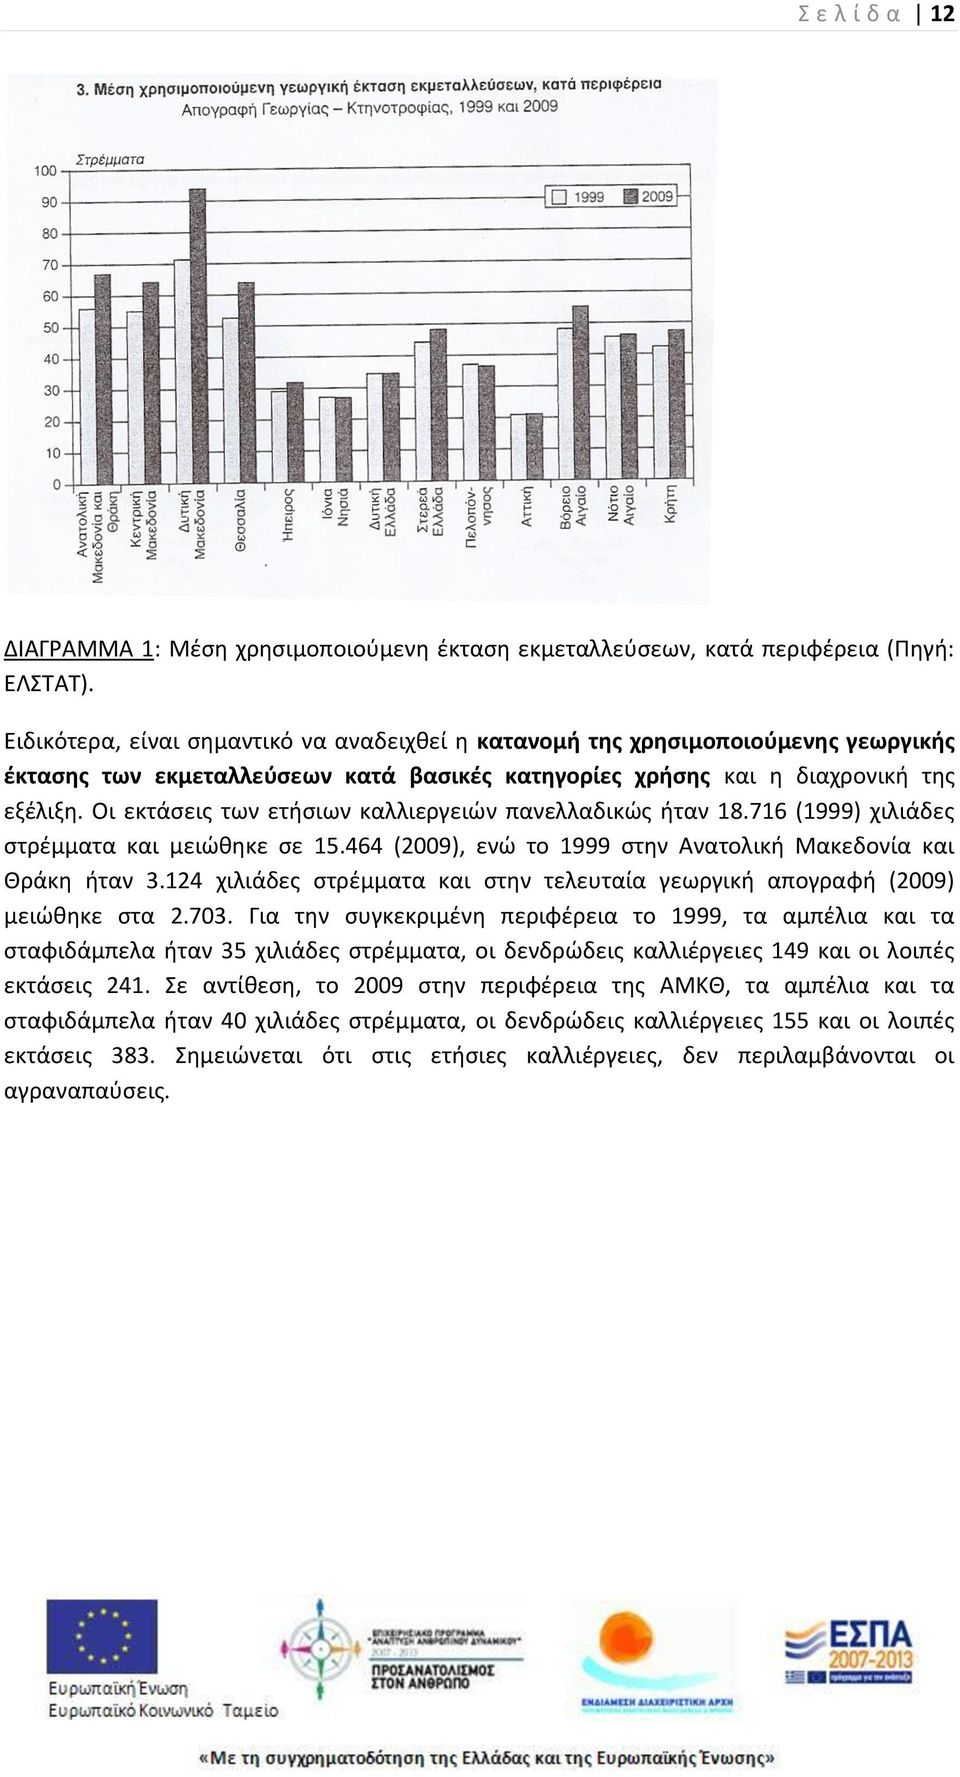 Οι εκτάςεισ των ετιςιων καλλιεργειϊν πανελλαδικϊσ ιταν 18.716 (1999) χιλιάδεσ ςτρζμματα και μειϊκθκε ςε 15.464 (2009), ενϊ το 1999 ςτθν Ανατολικι Μακεδονία και Κράκθ ιταν 3.